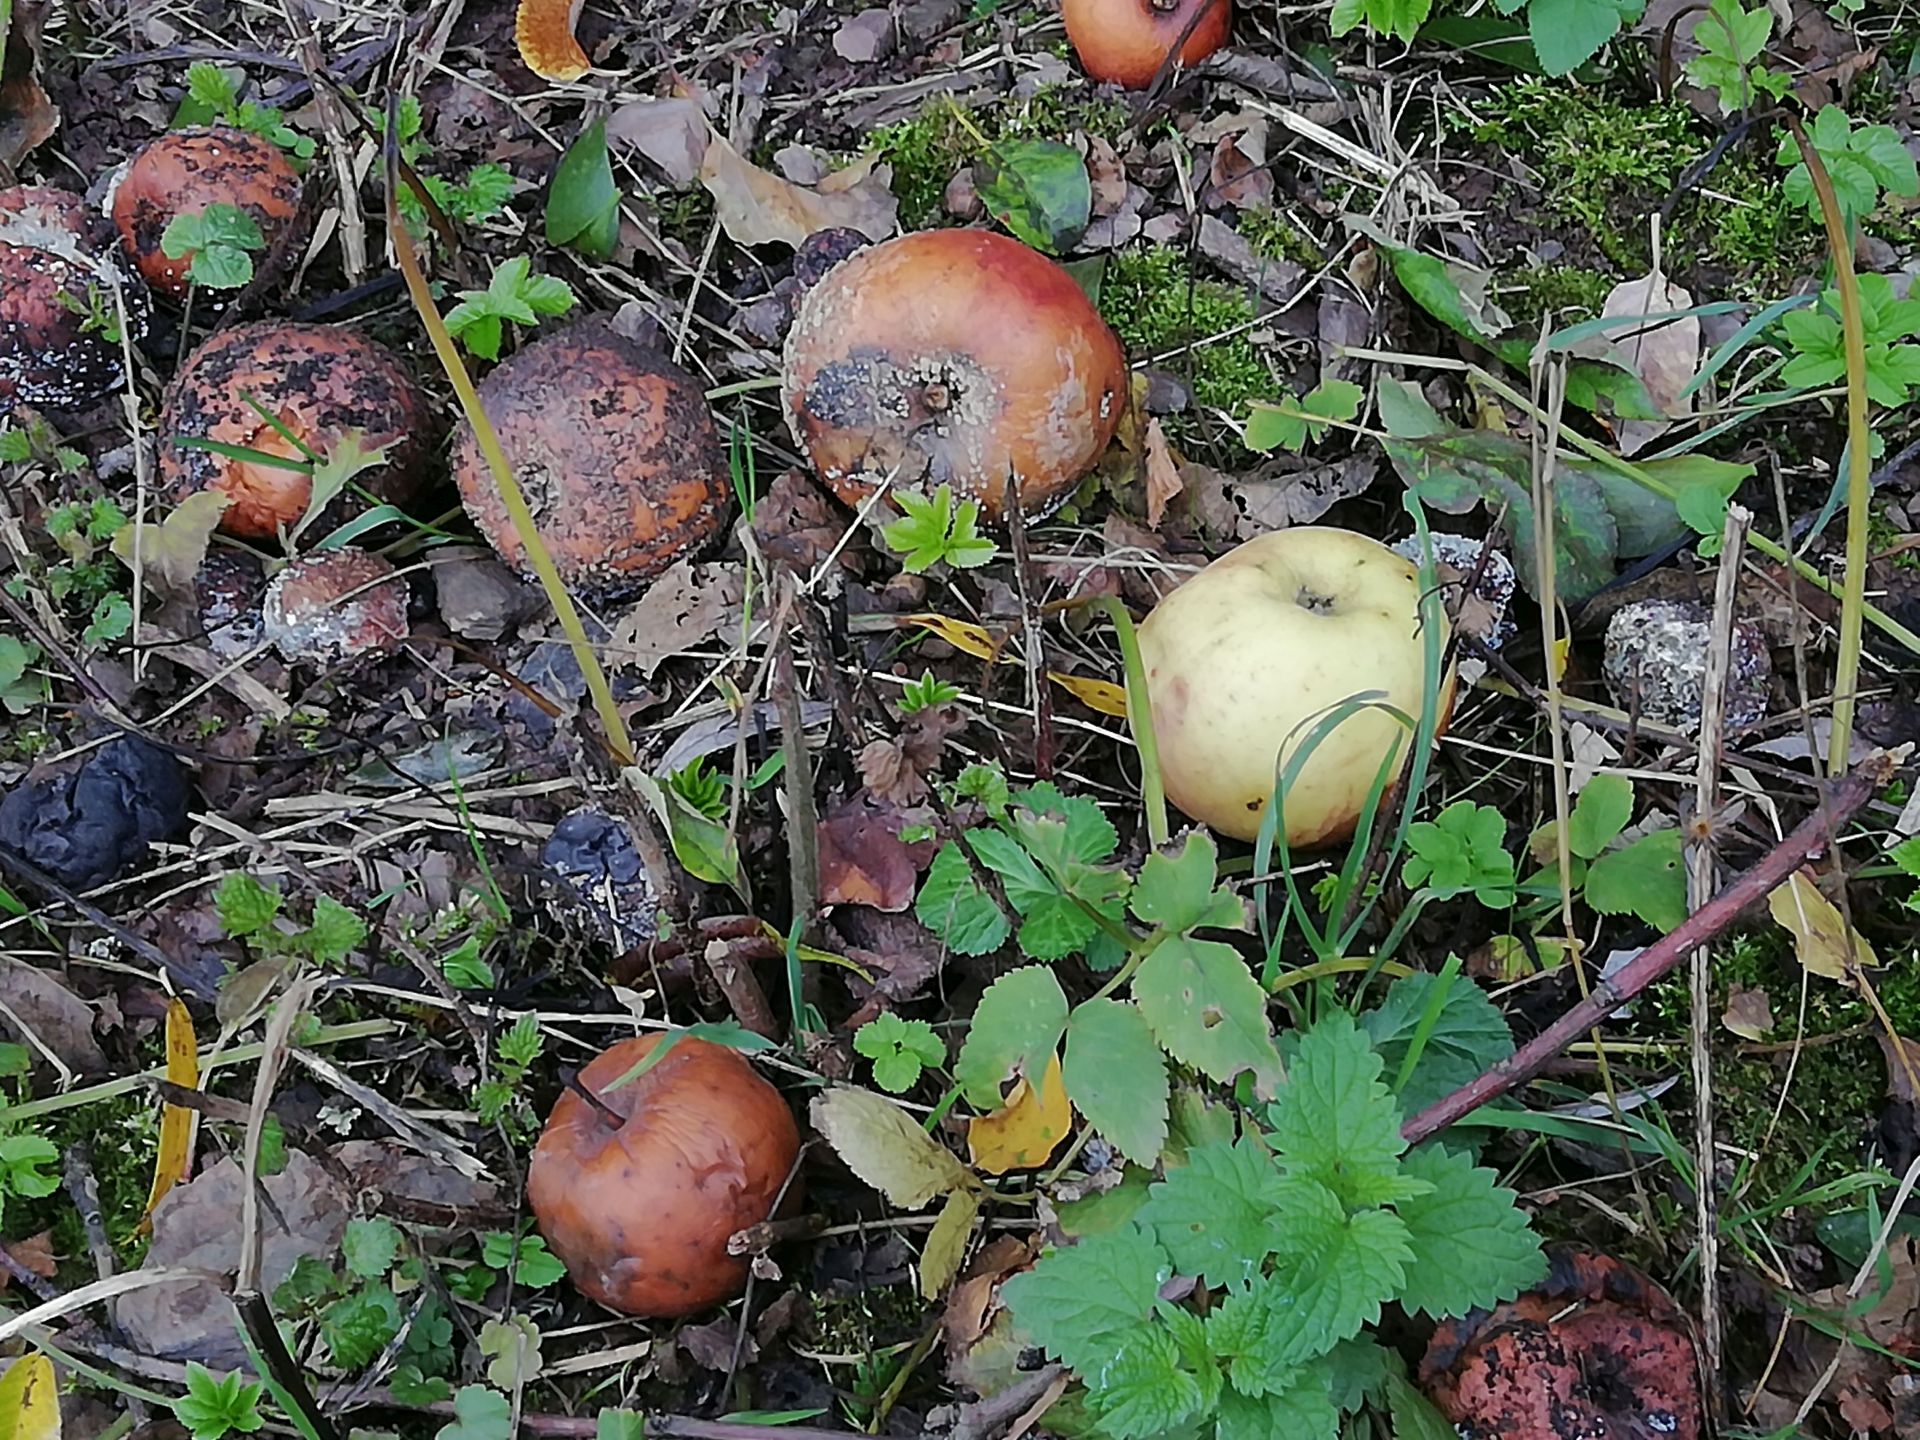 Äpfel liegen auf dem Boden zwischen kleinen Ästen und Pflanzen